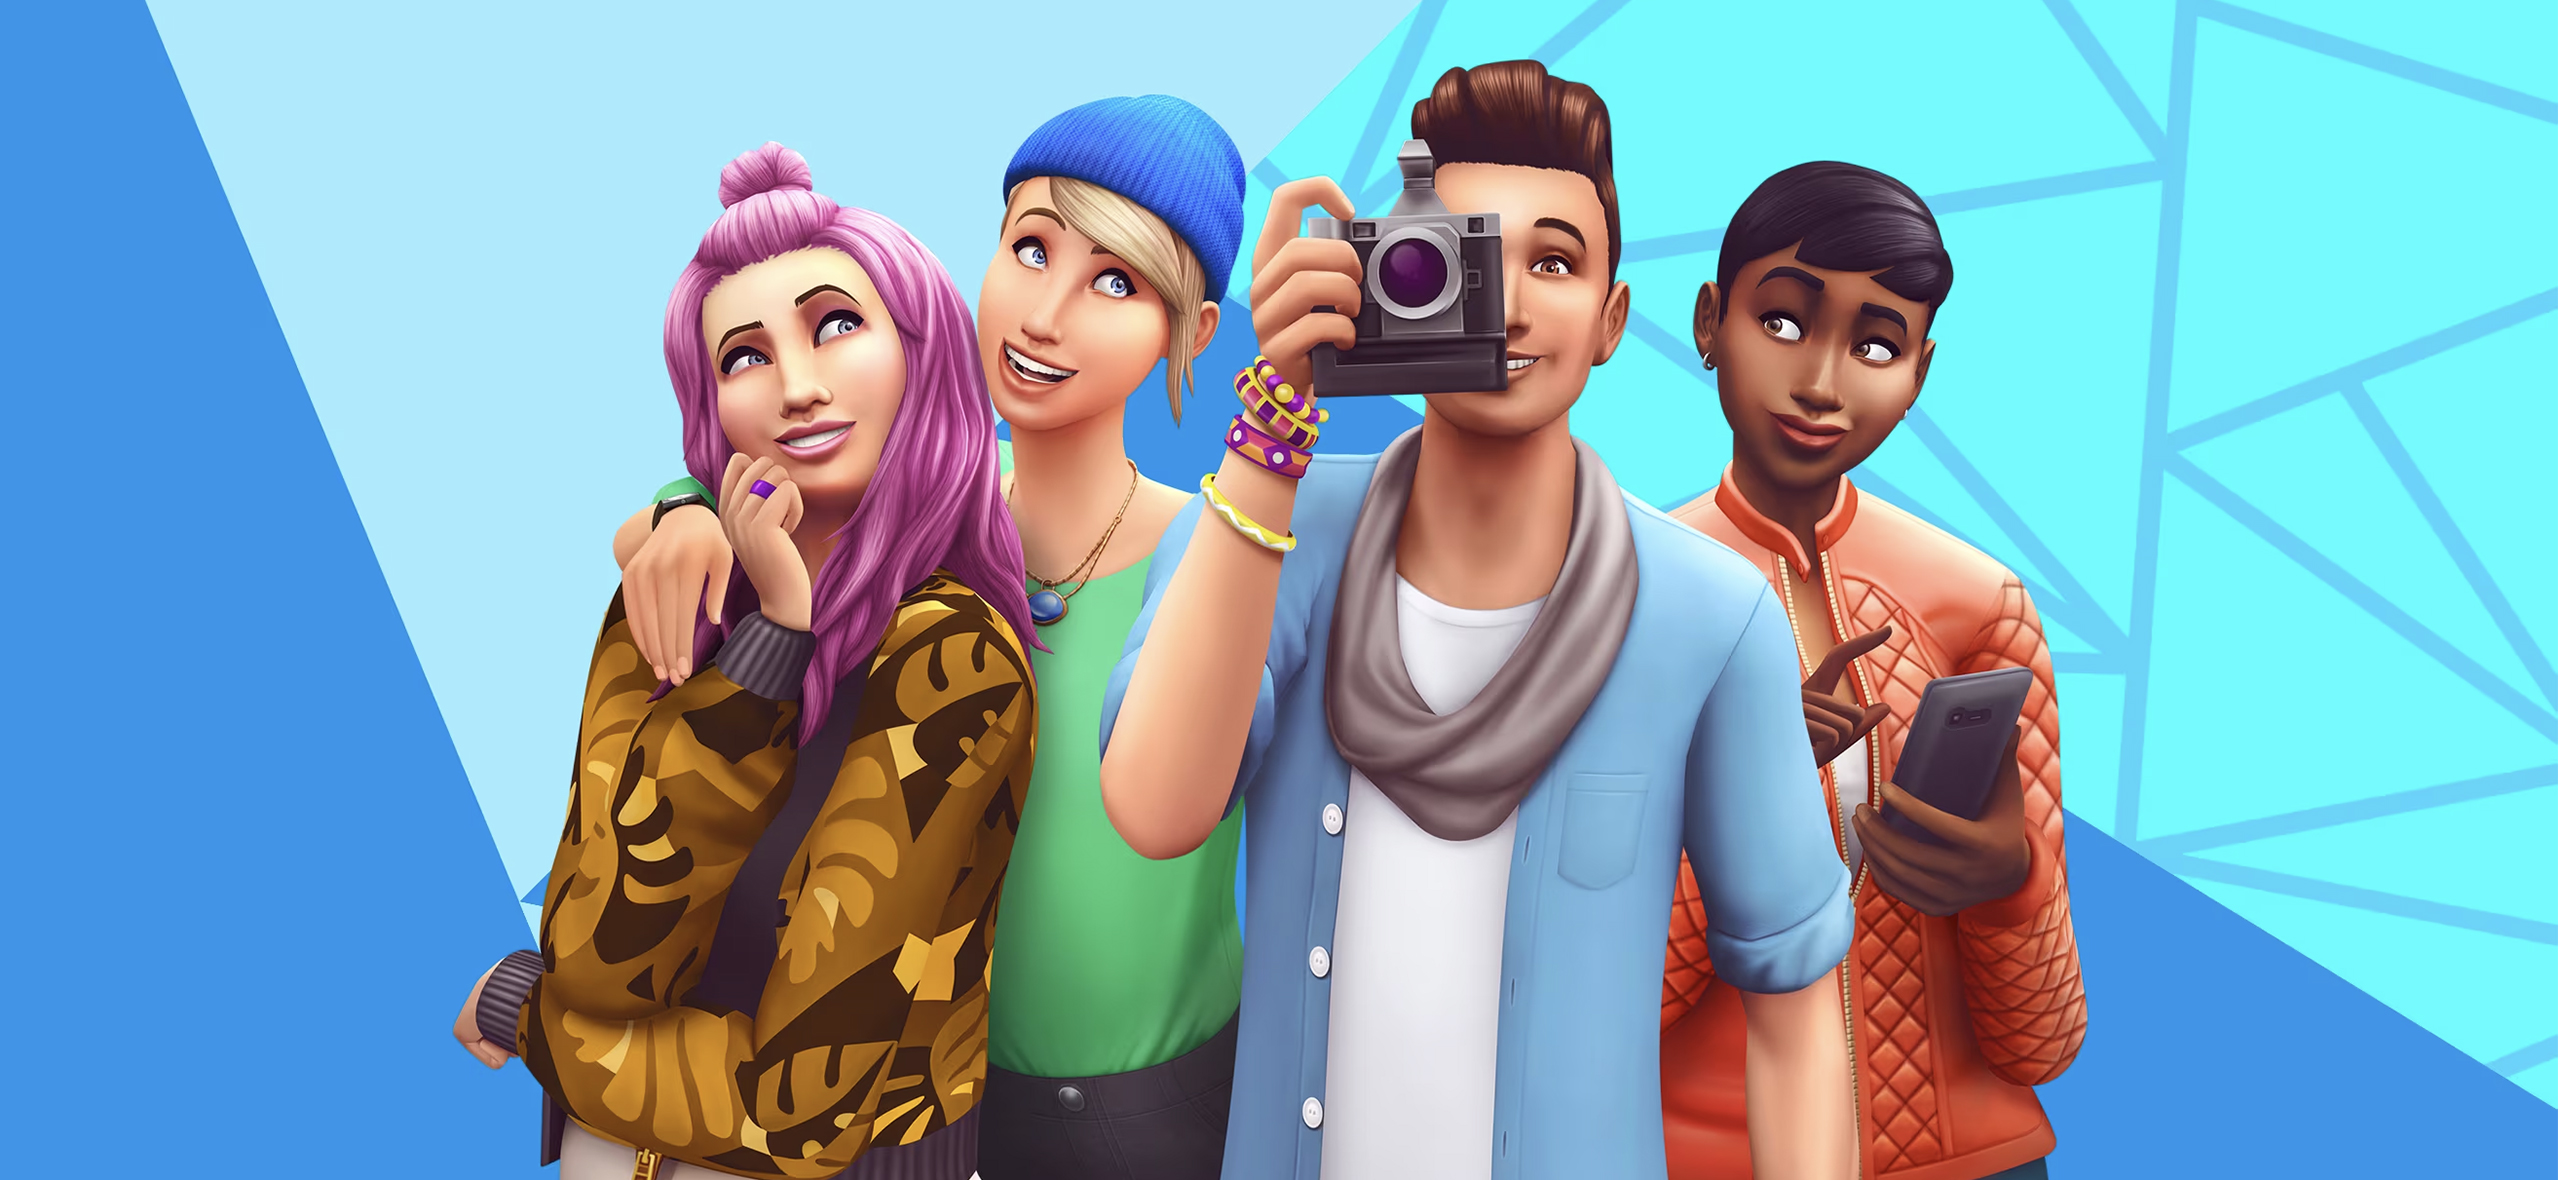 The Sims Project Rene: что известно о новой части симулятора жизни